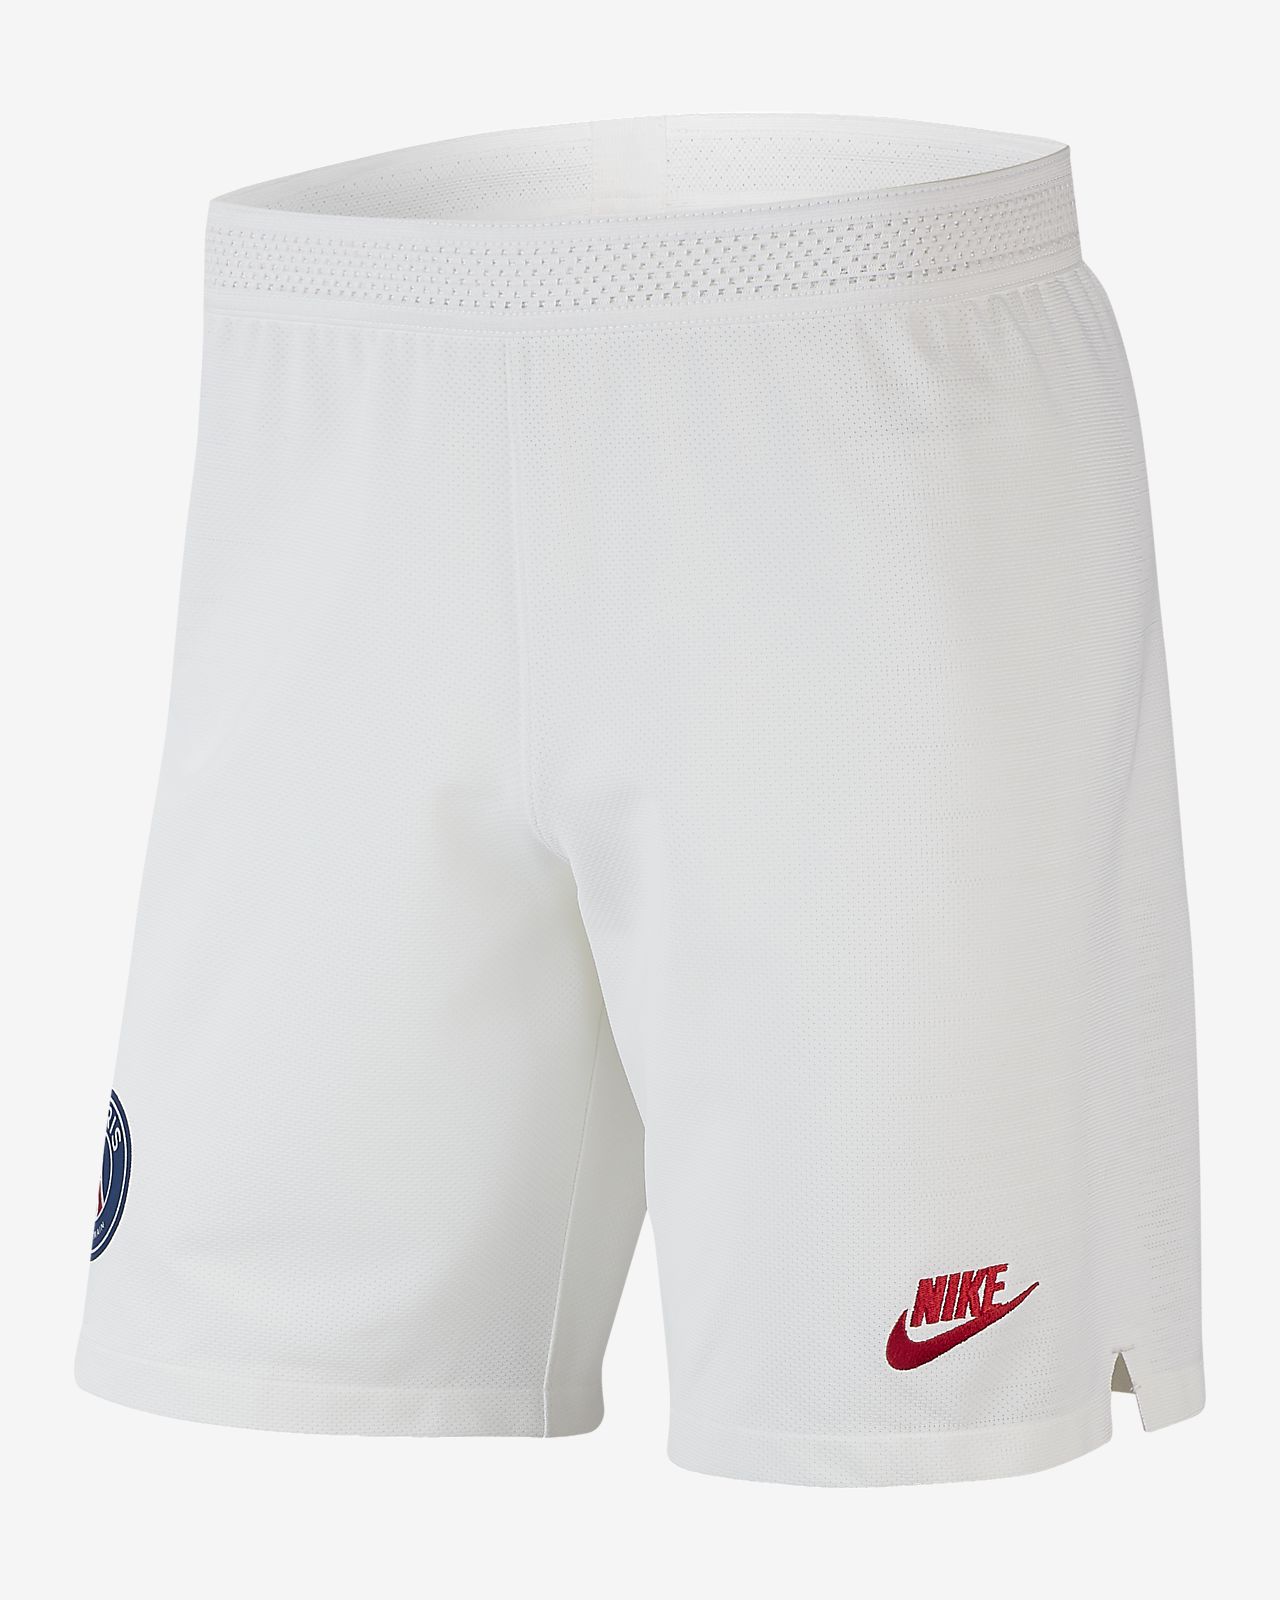 new nike shorts 2019